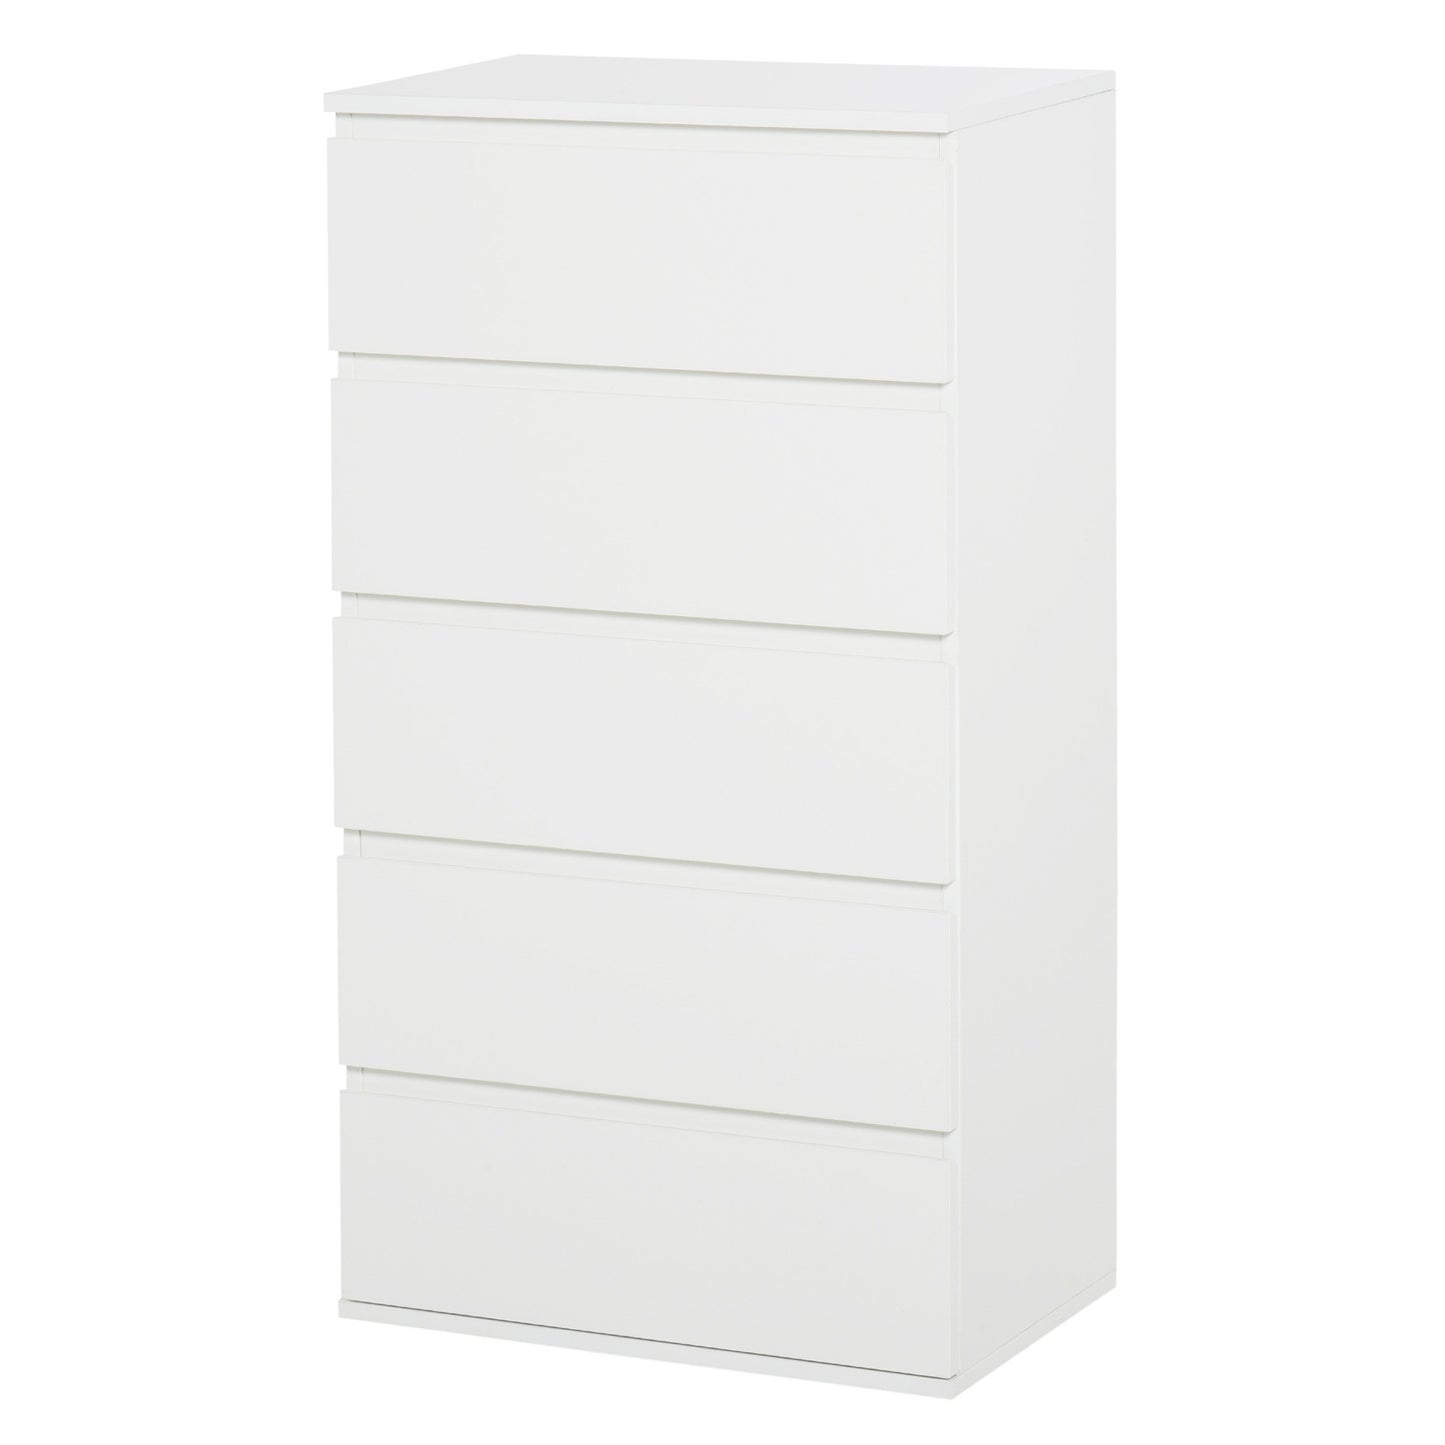 HOMCOM 5 Drawer Cabinet Storage Cupboard Wooden Freestanding Organiser Unit White